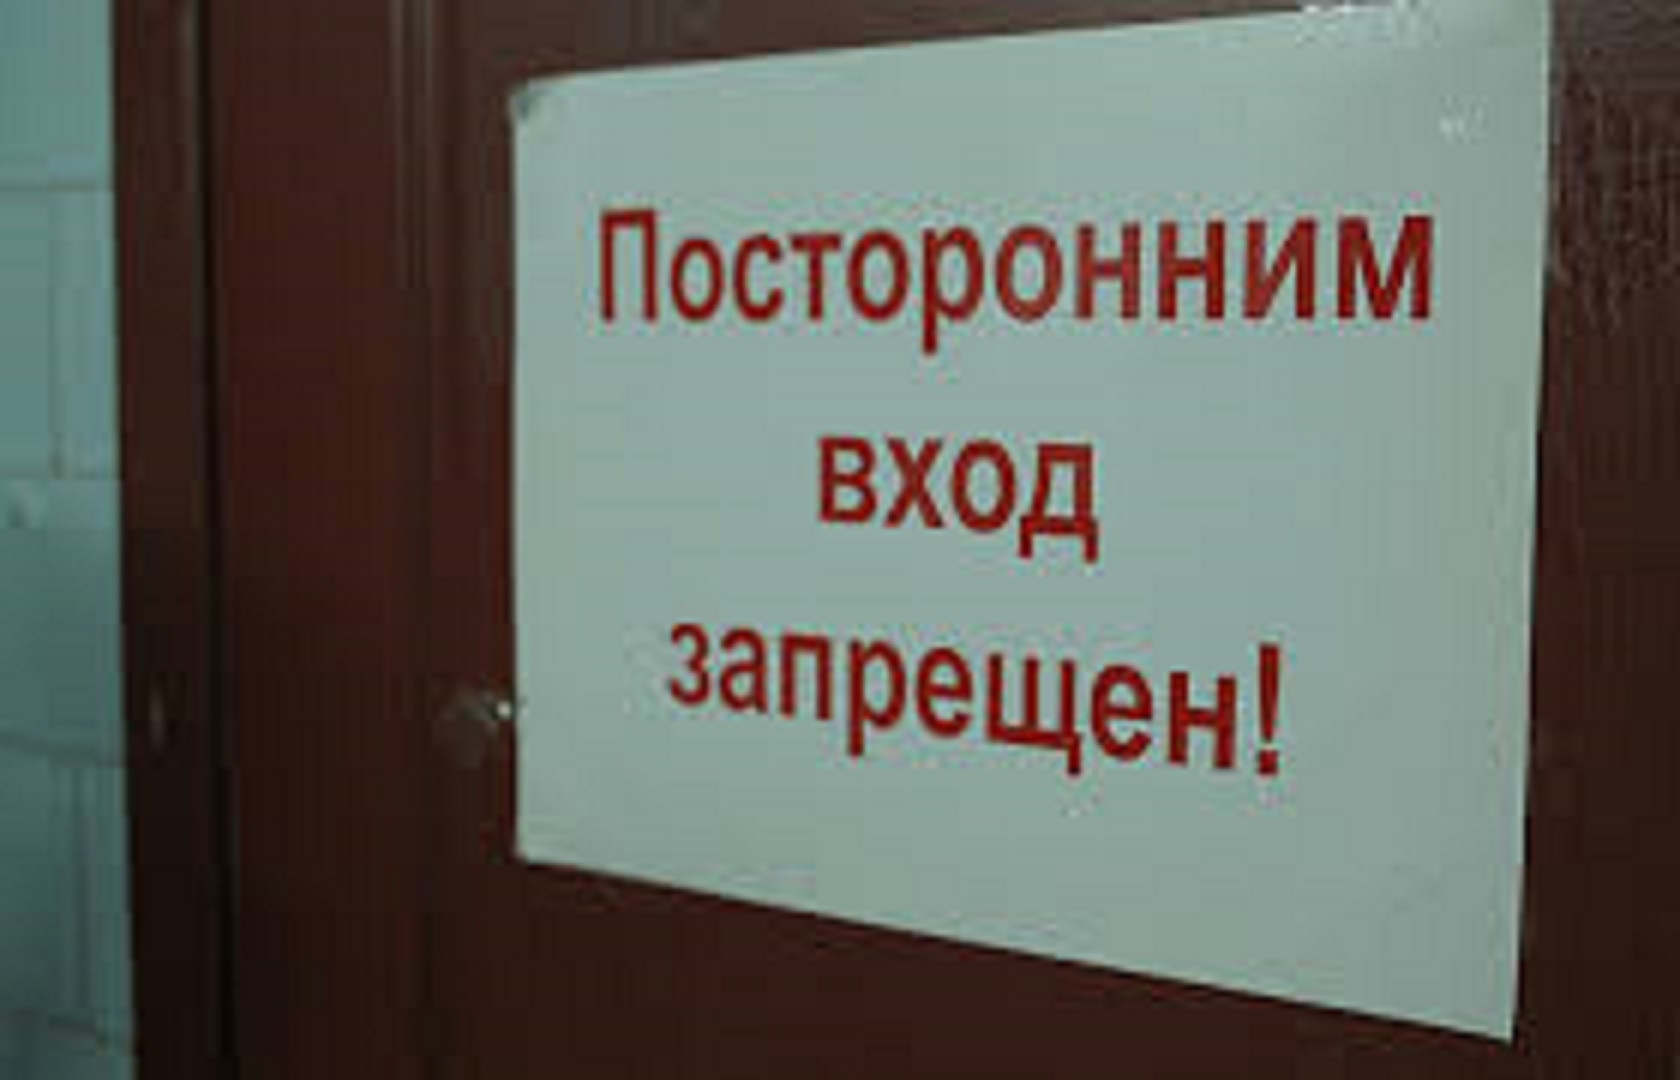 вход запрещен картинки с надписью